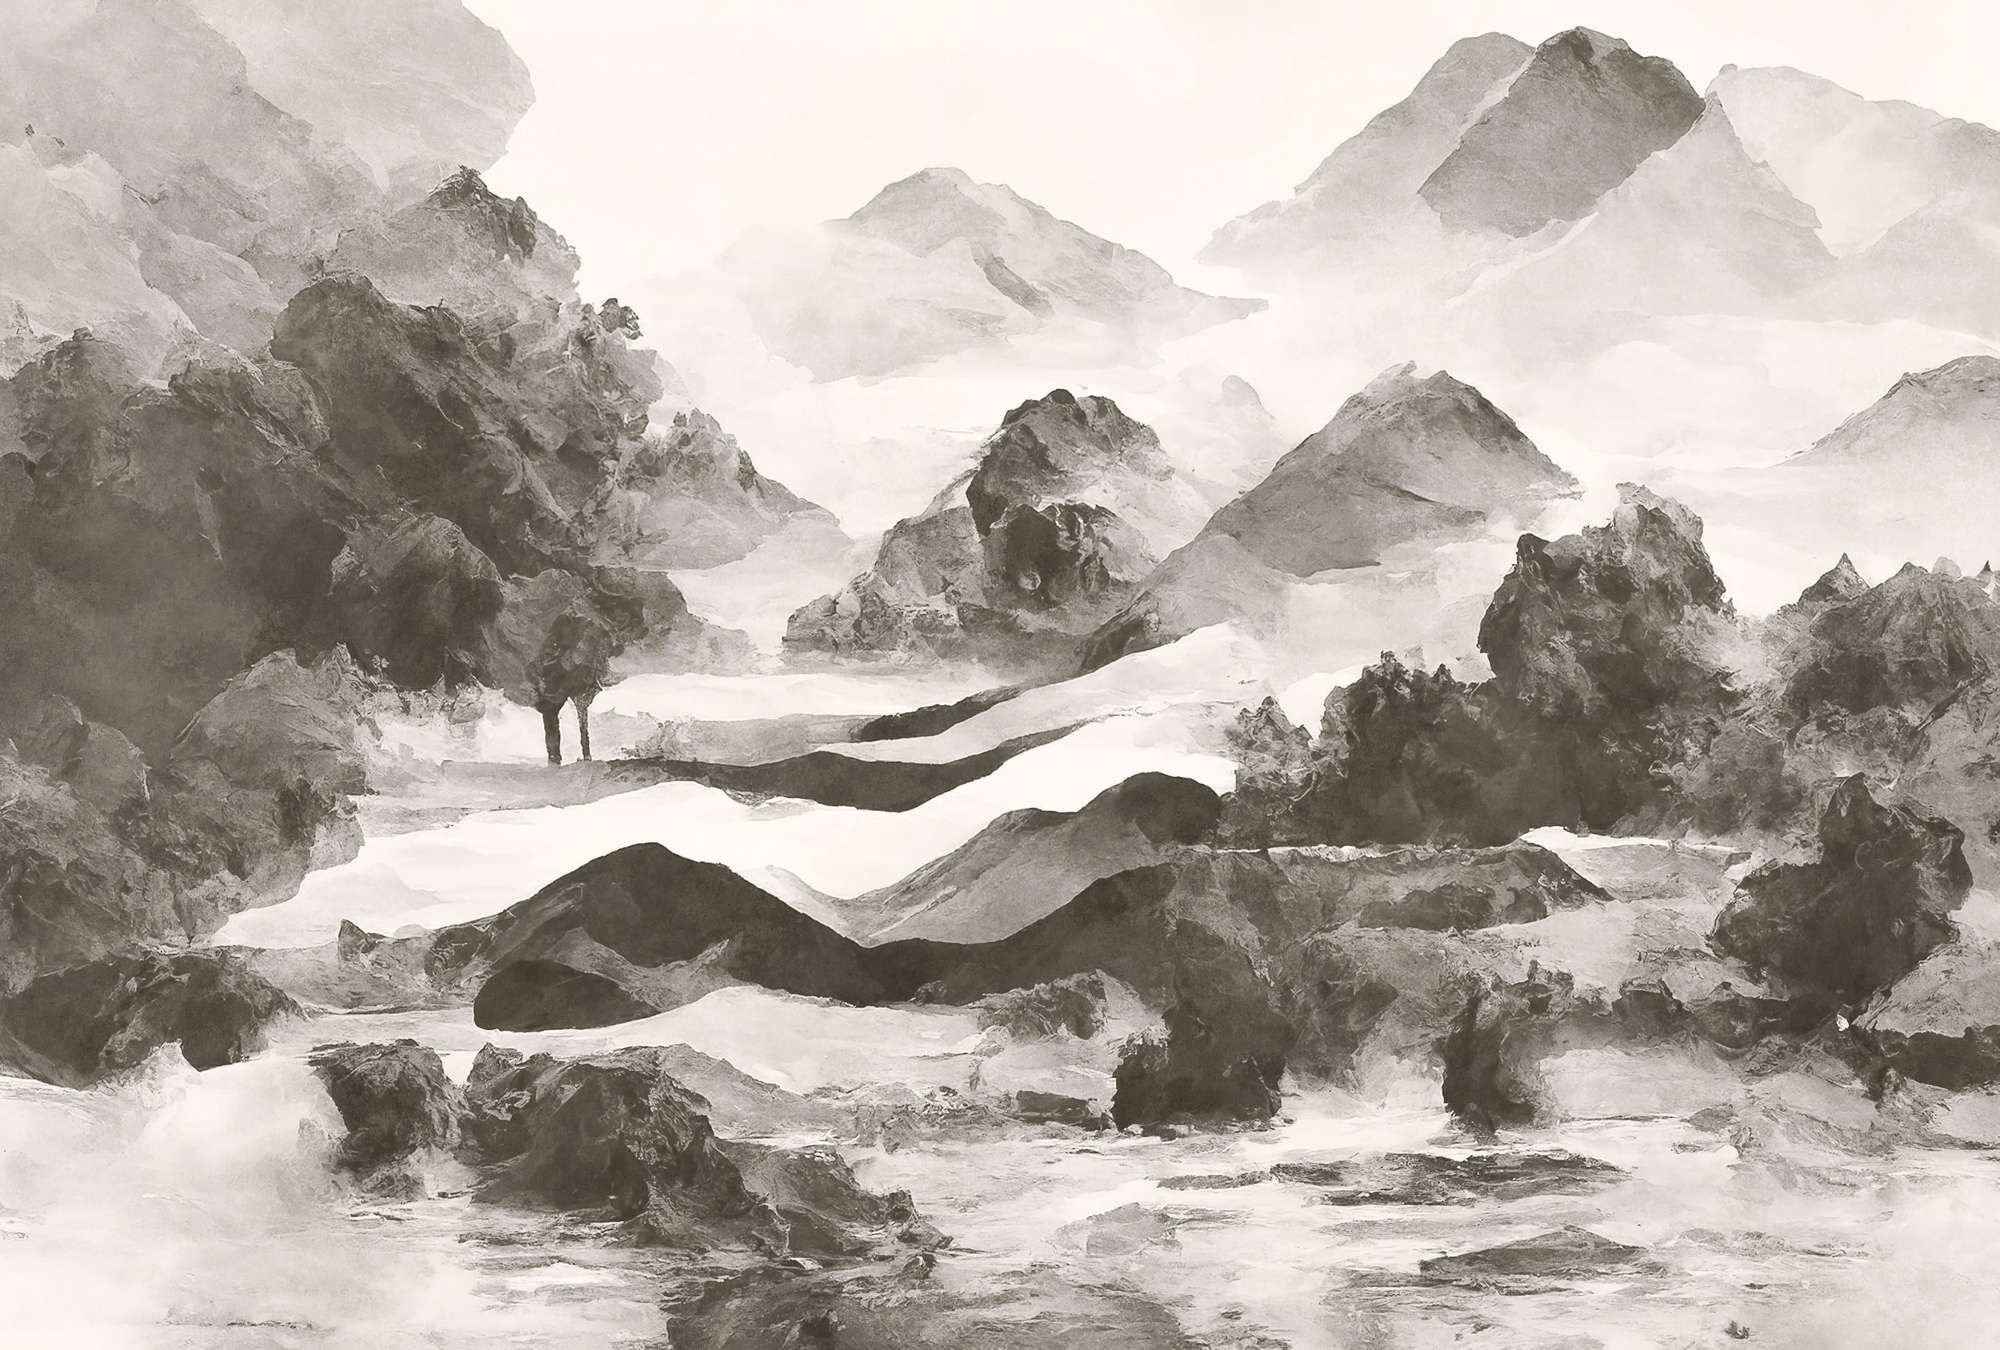             Fototapete »tinterra 1« - Landschaft mit Bergen & Nebel – Grau | Glattes, leicht perlmutt-schimmerndes Vlies
        